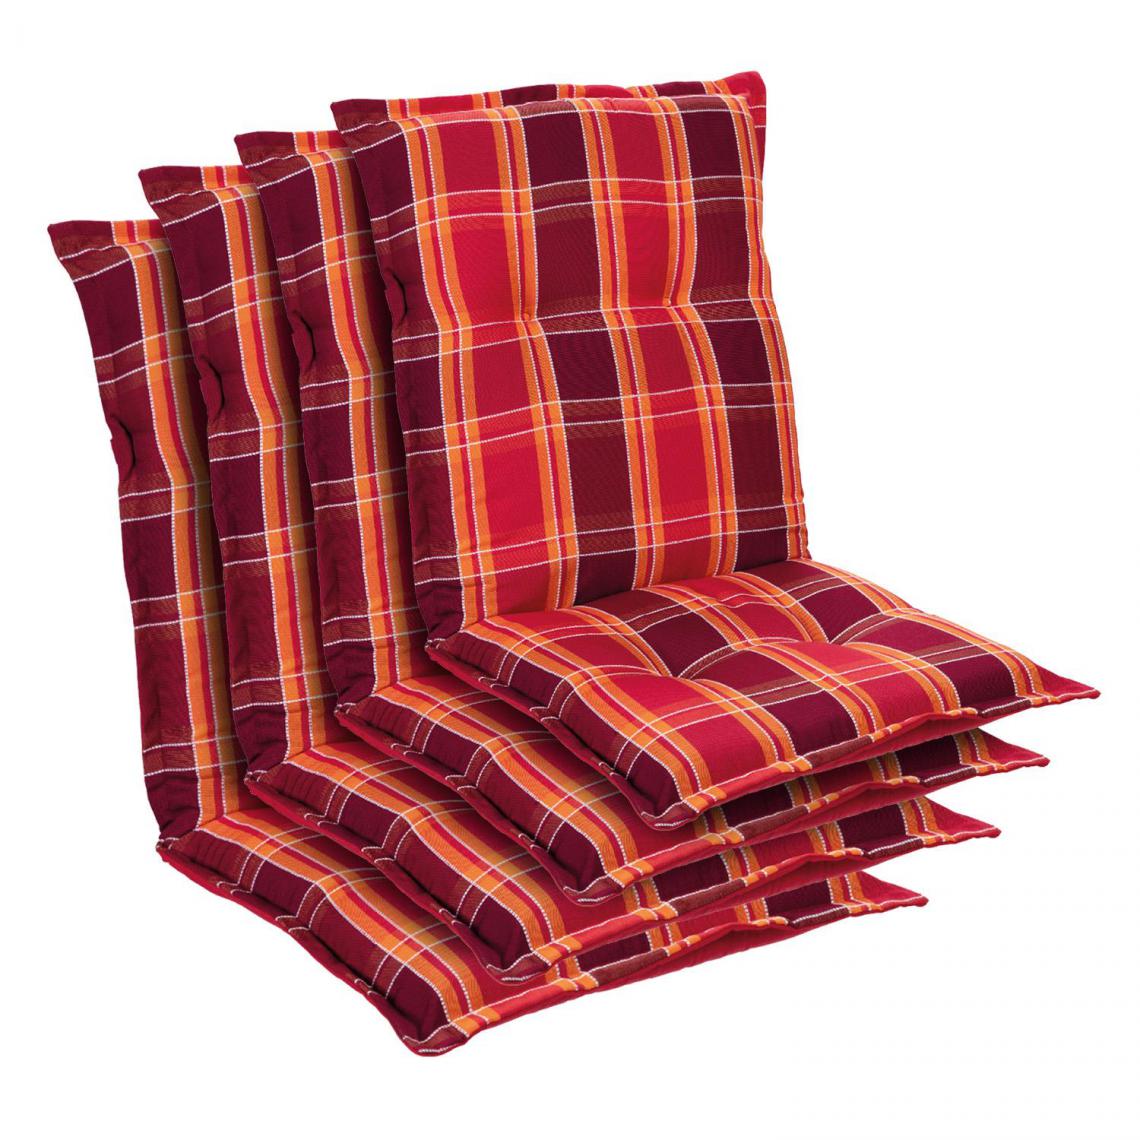 Blumfeldt - Prato coussin de fauteuil dossier bas Polyester 50x100x8cm - Rouge - Coussins, galettes de jardin